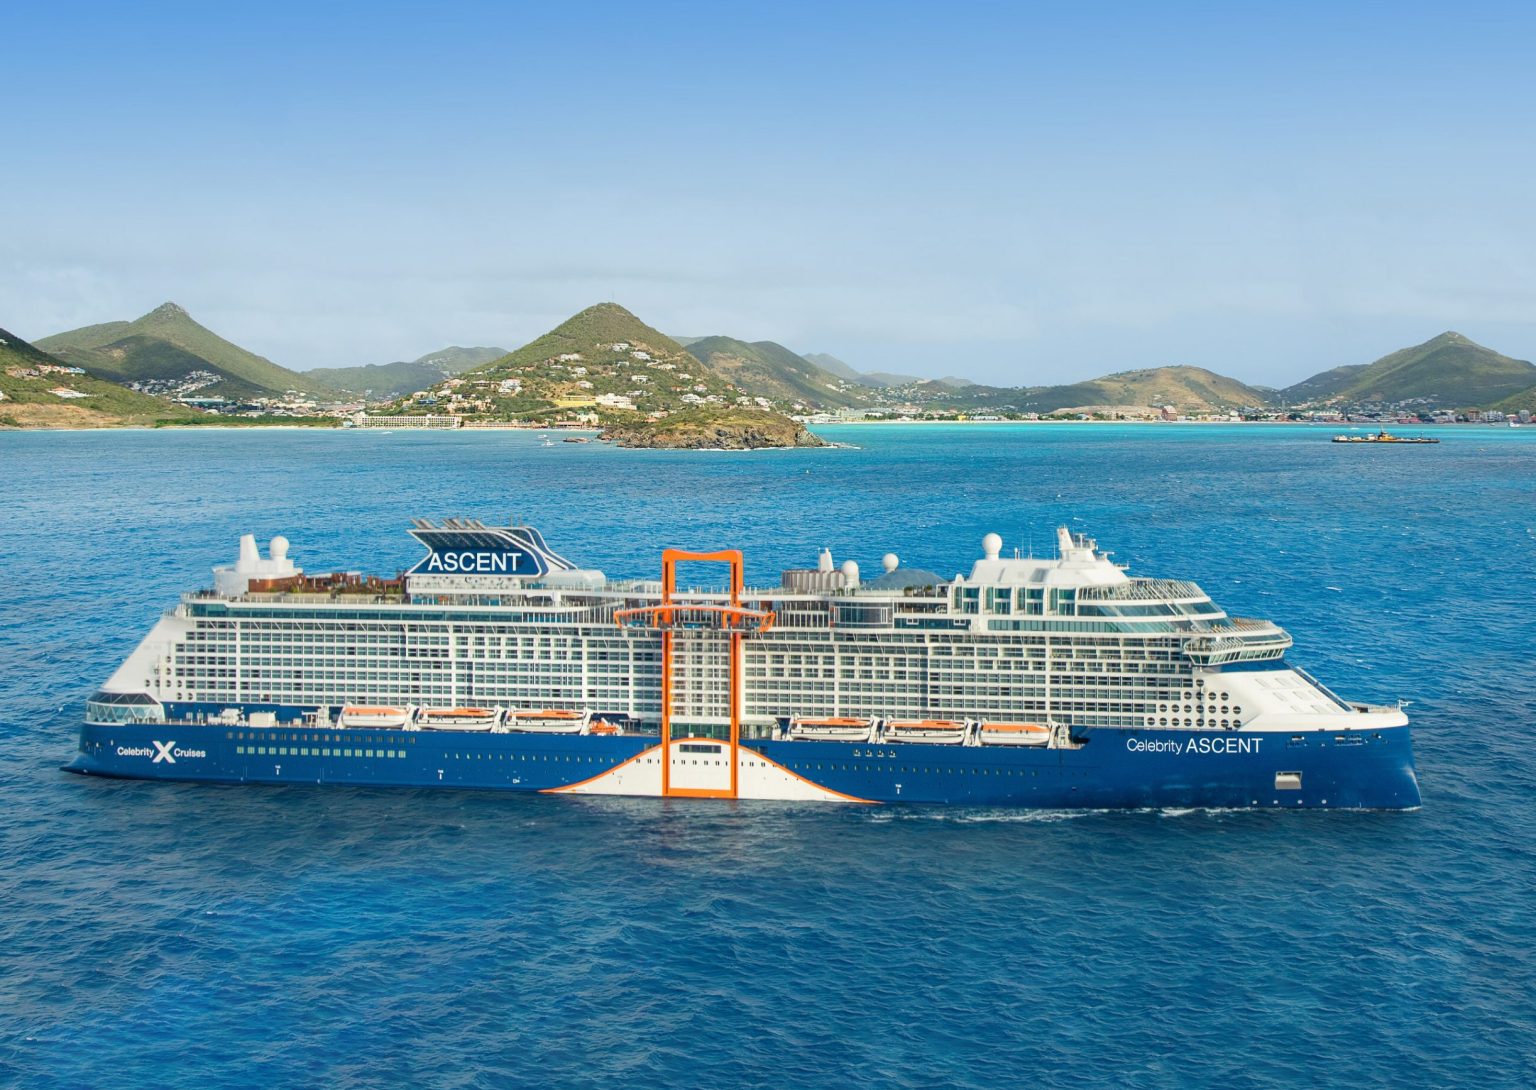 Celebrity Cruises Announces Details For Celebrity Ascent | Porthole ...